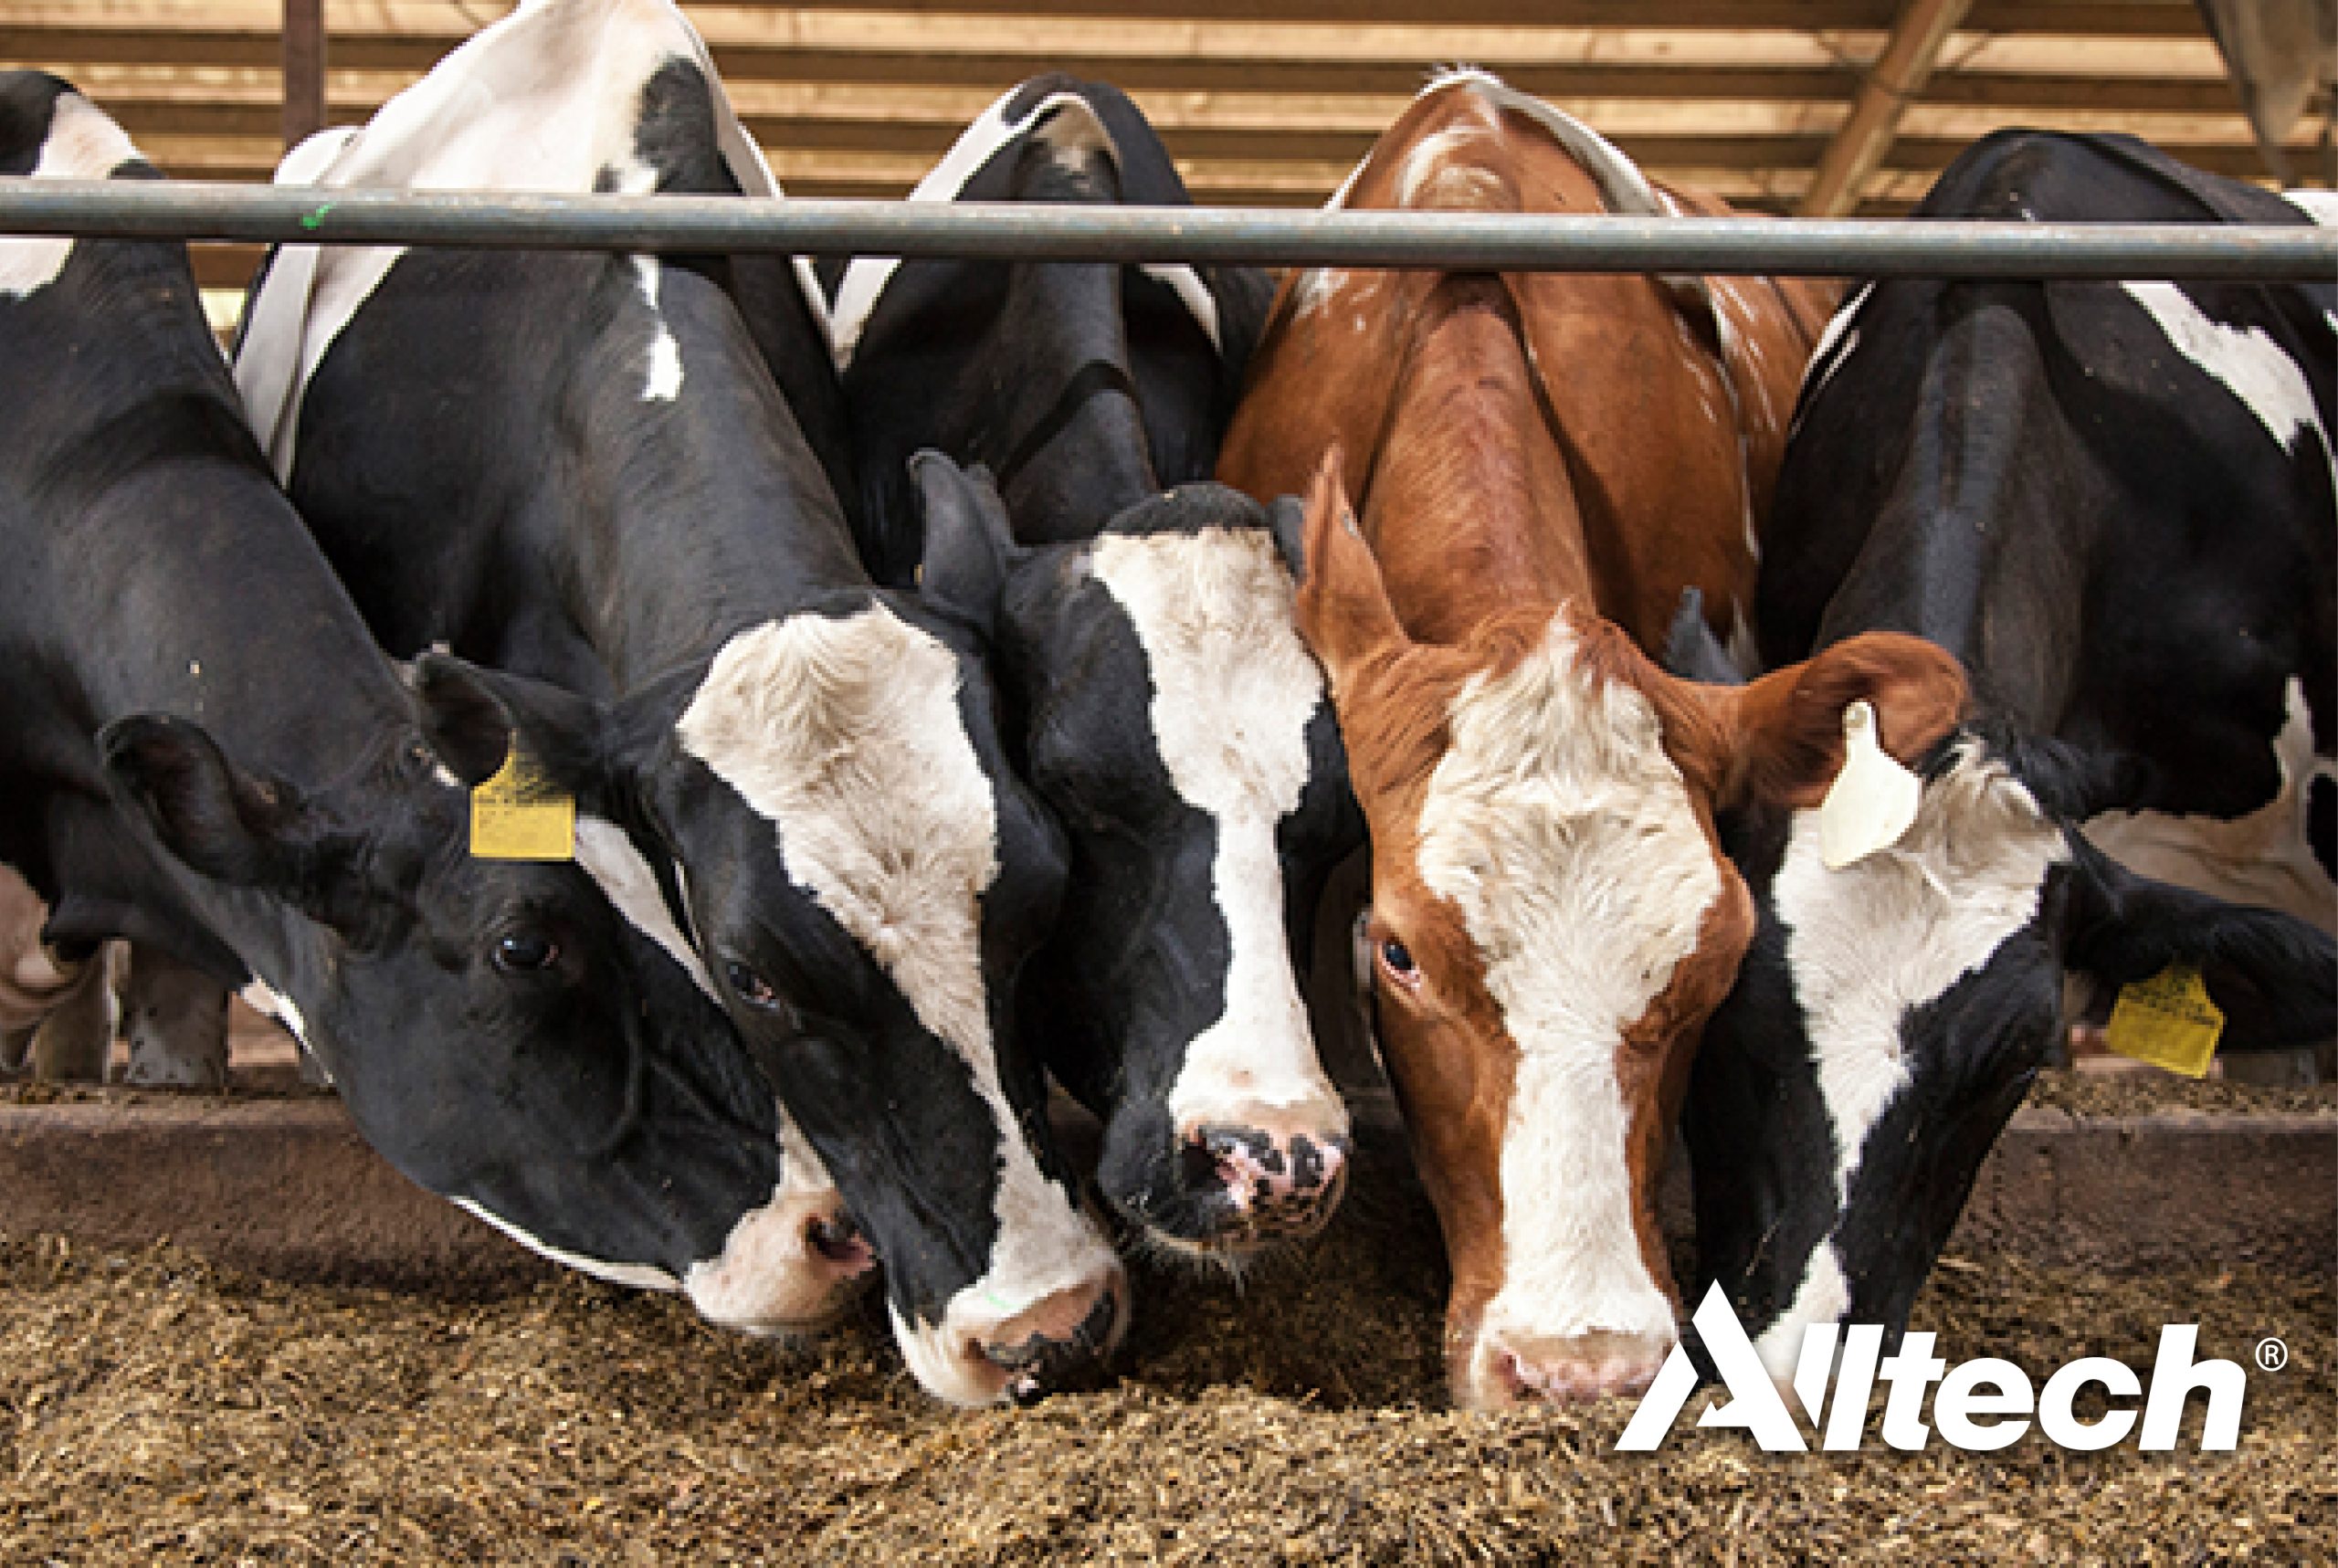 Alltech desenvolve tecnologias para reduzir pegada ecológica das vacas leiteiras